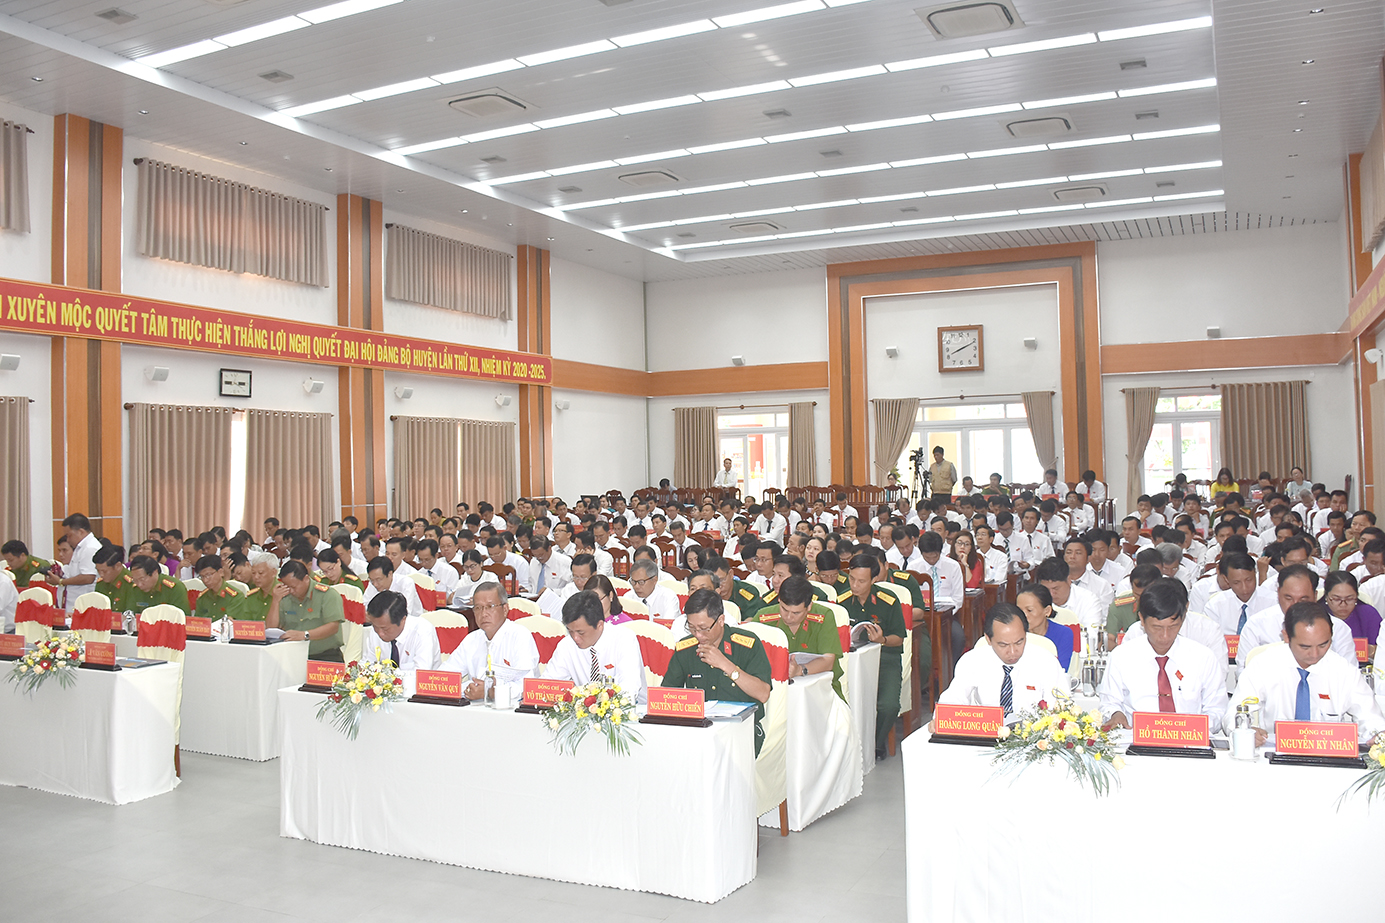 257 đại biểu, đại diện cho hơn 3.456 đảng viên trong toàn Đảng bộ huyện Xuyên Mộc được triệu tập tham dự Đại hội.